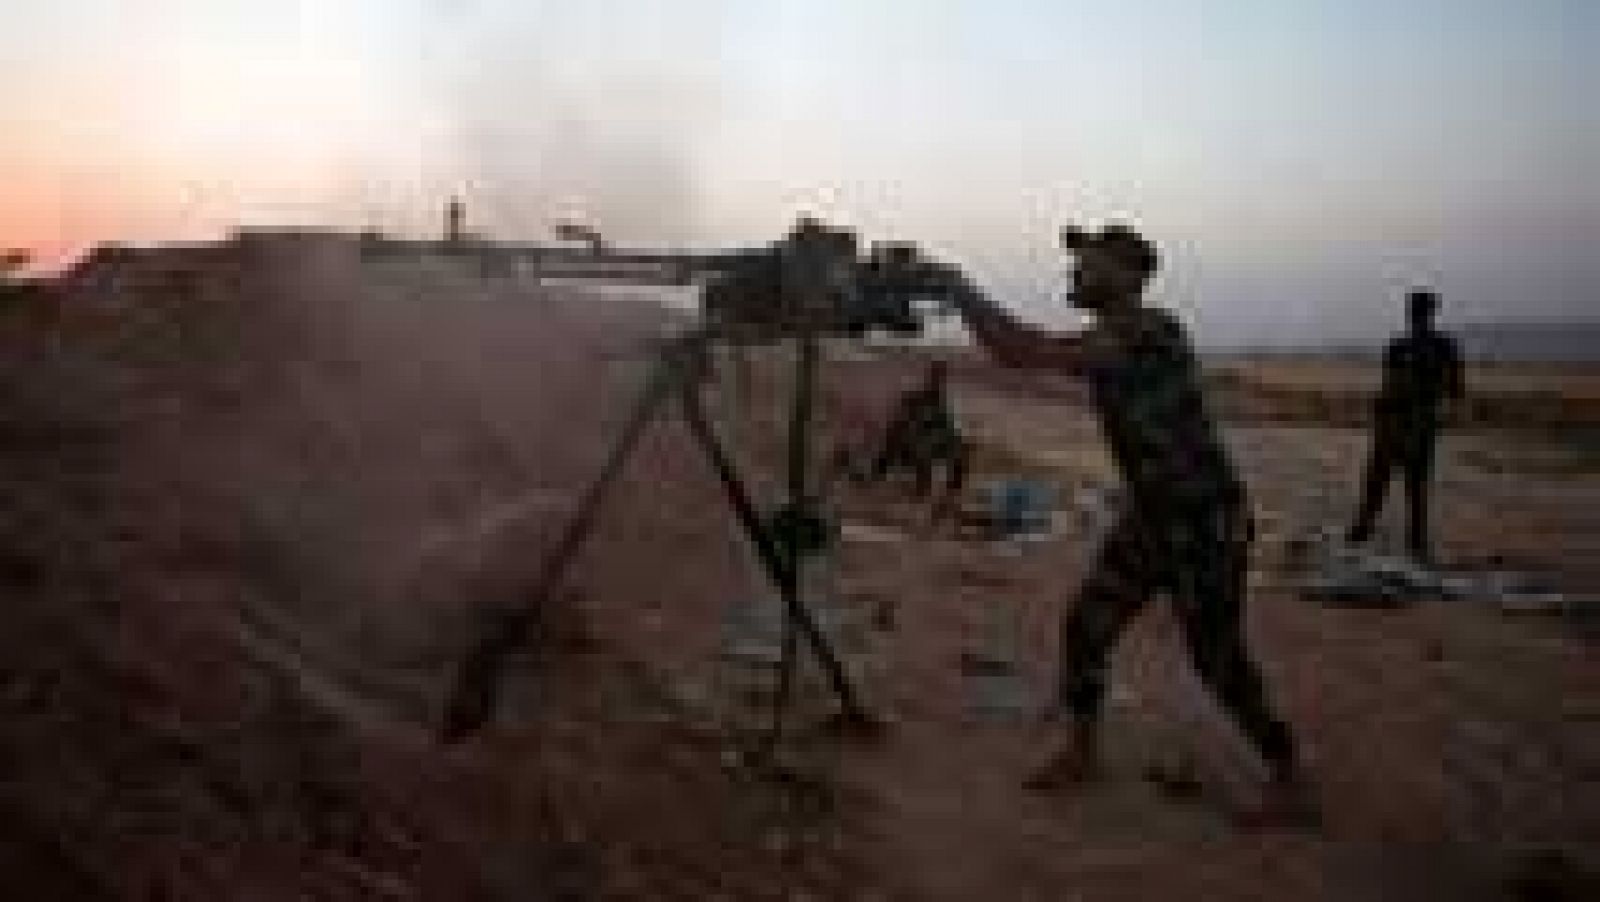 Alemania ha decidido entregar armas a los kurdos iraquíes